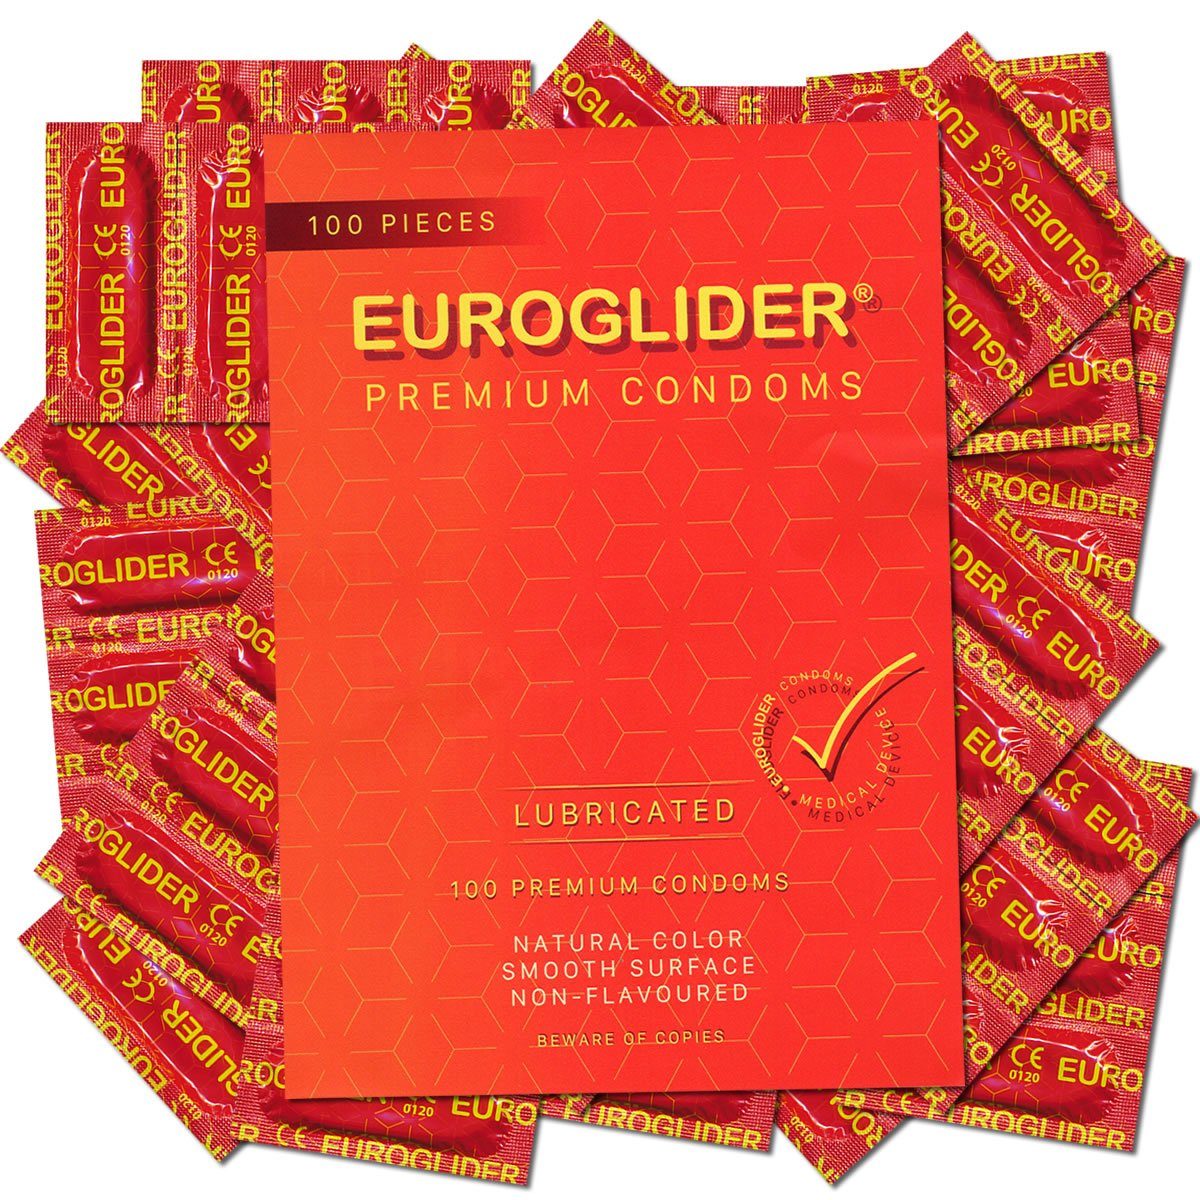 Euroglider Kondome Premium Condoms - strapazierfähige Profi-Kondome hohe Qualität, sicher und zuverlässig, Packung mit, 100 St., hervorragendes Preis-Leistungsverhältnis, für professionelle Ansprüche geeignet